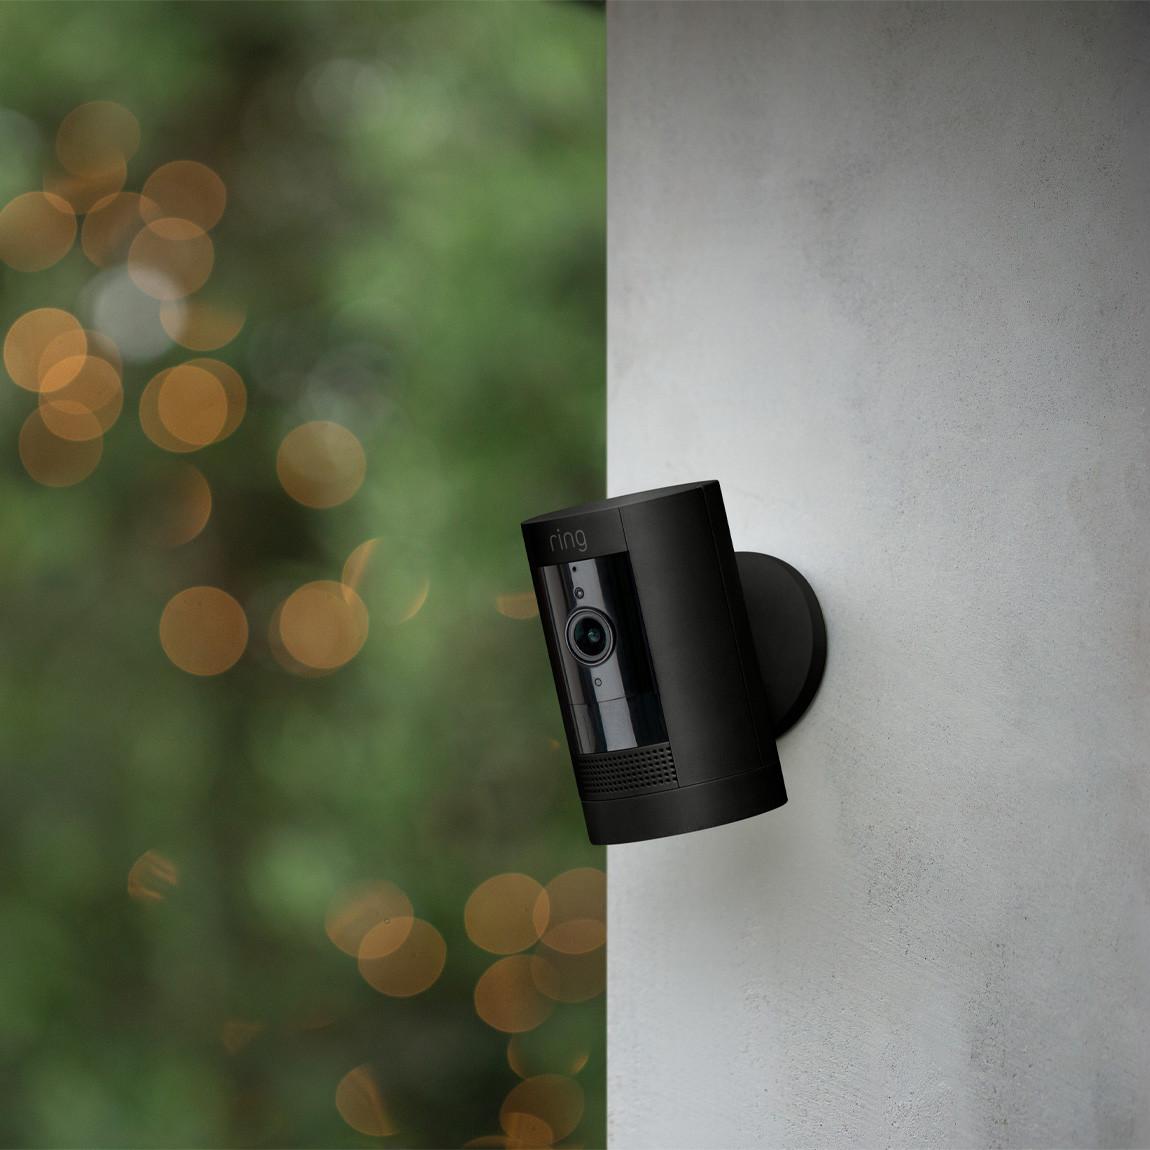 Ring Stick Up Cam Battery - HD-Kamera für den Innen- und Außenbereich - Lifestyle außen